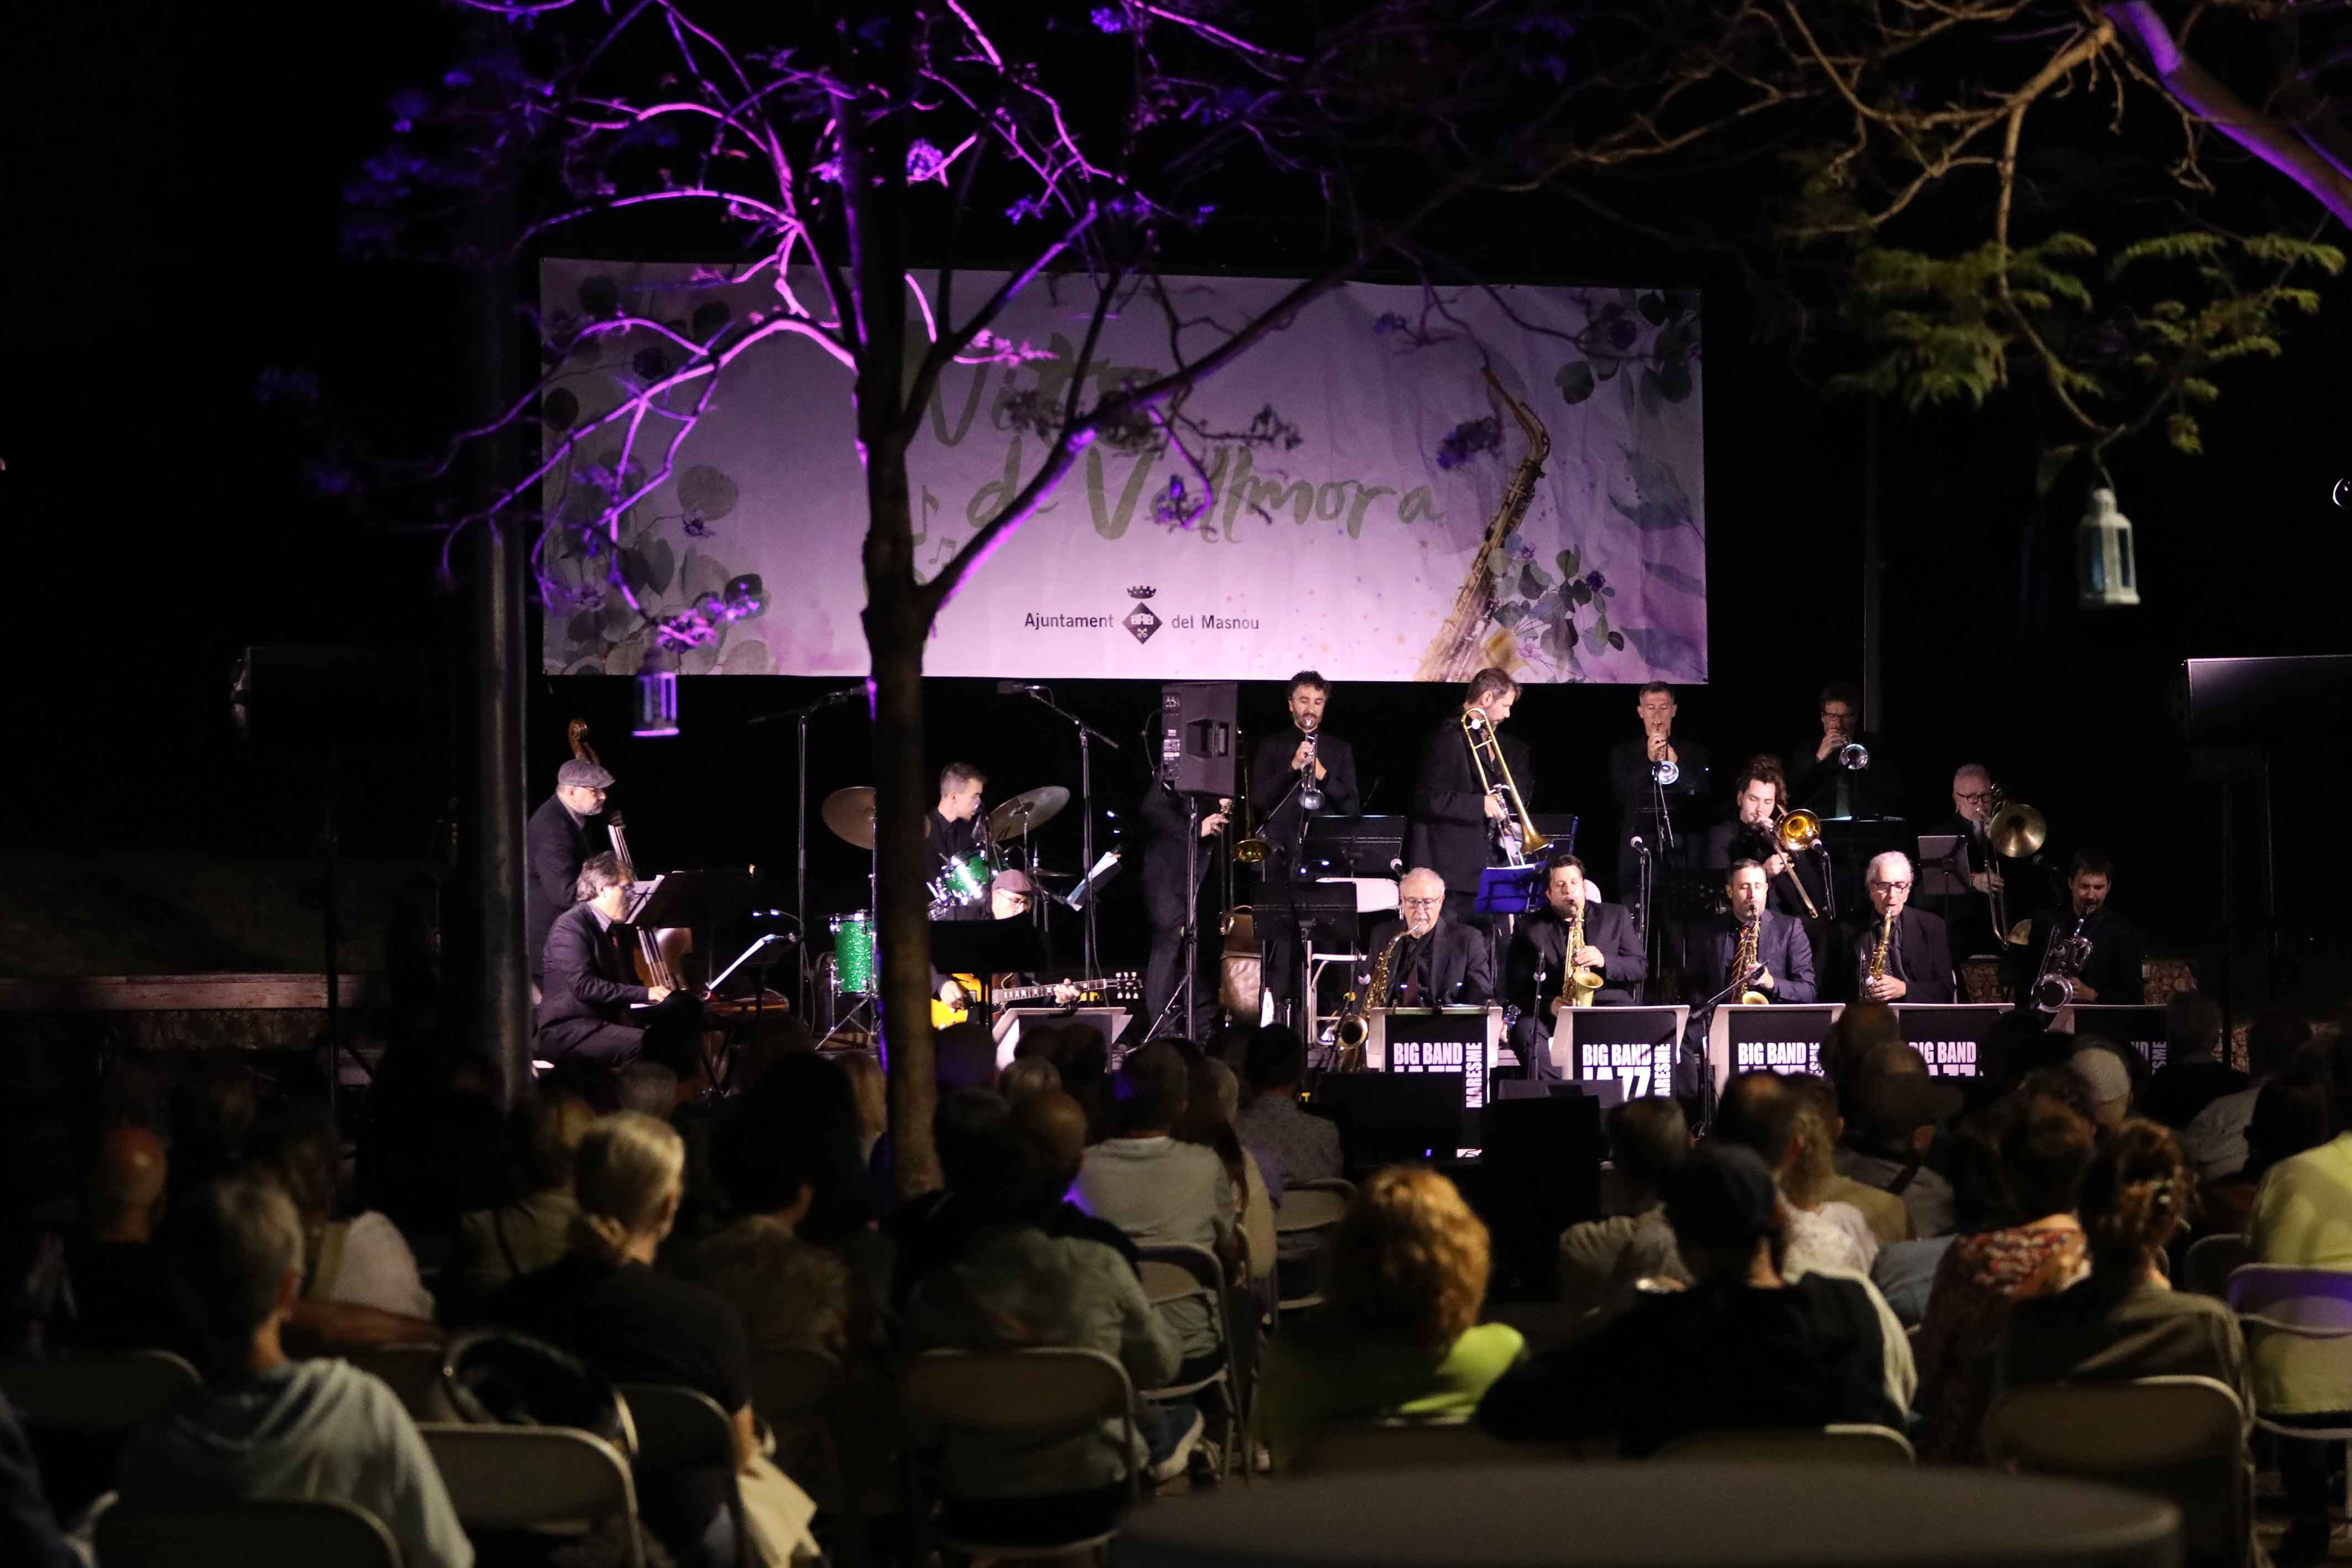 El parc de Vallmora viu una reeixida vetllada de jazz